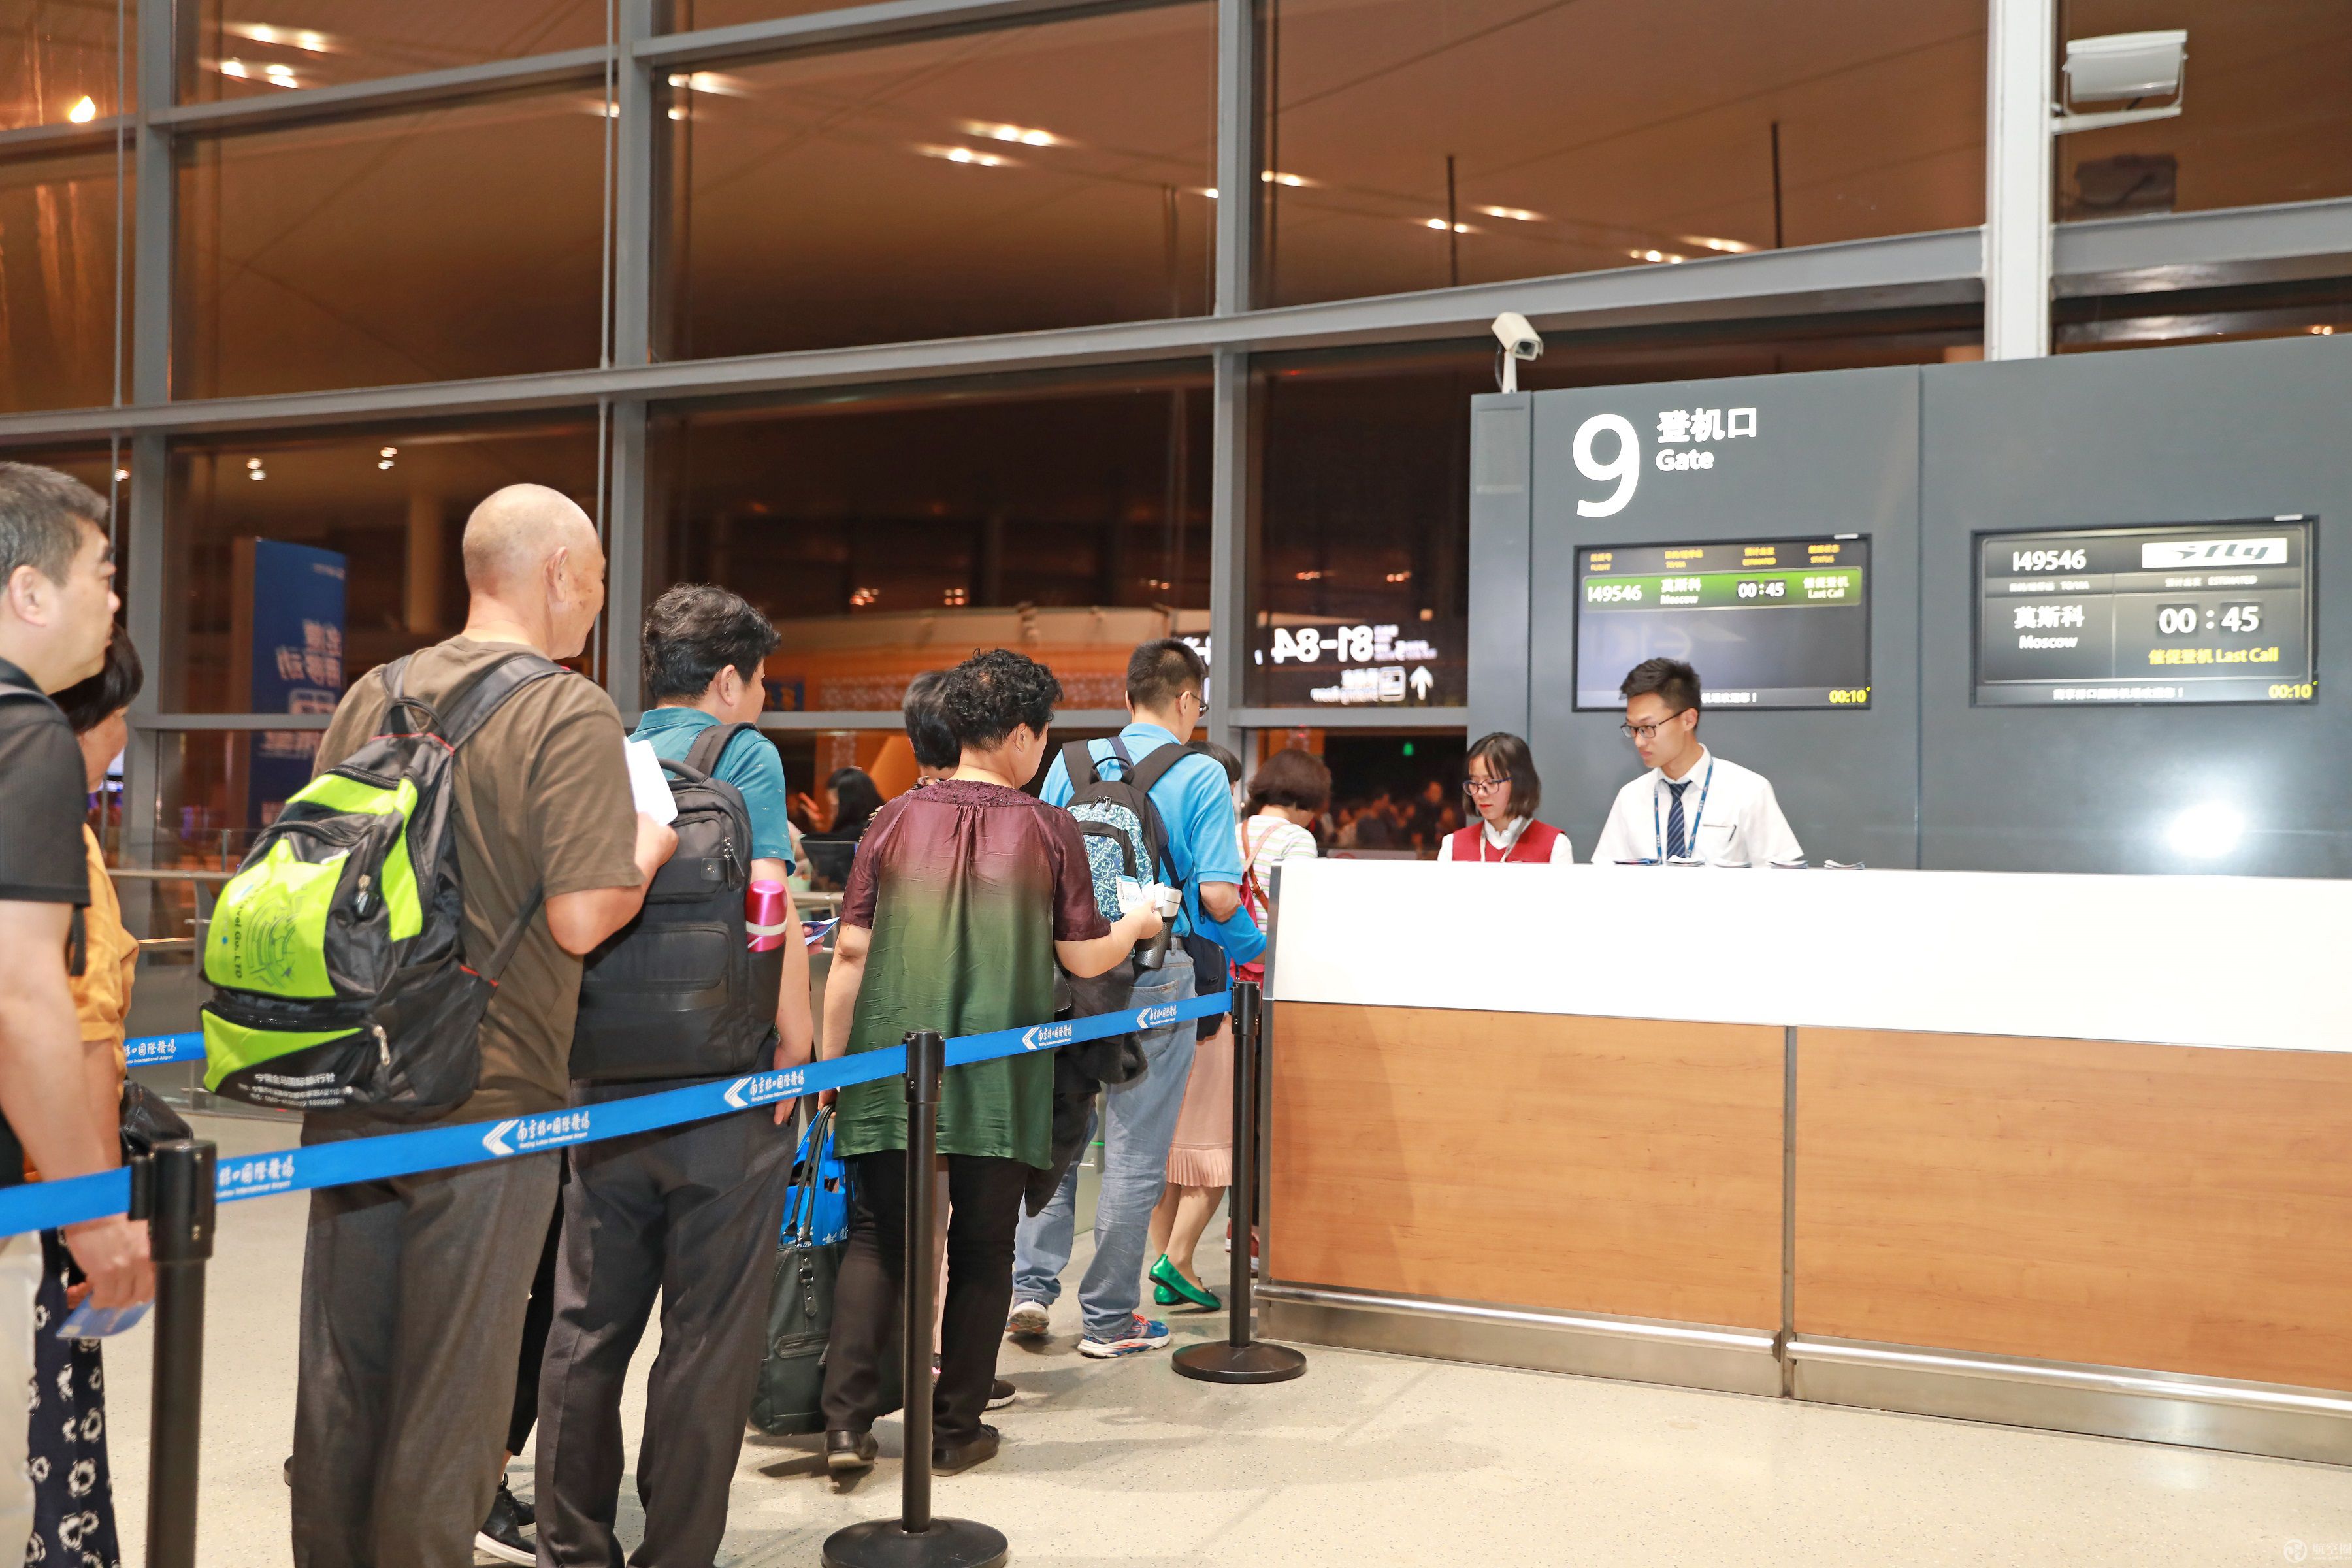 南京禄口机场开通国内航班中转专用柜台 - 民航 - 人民交通网